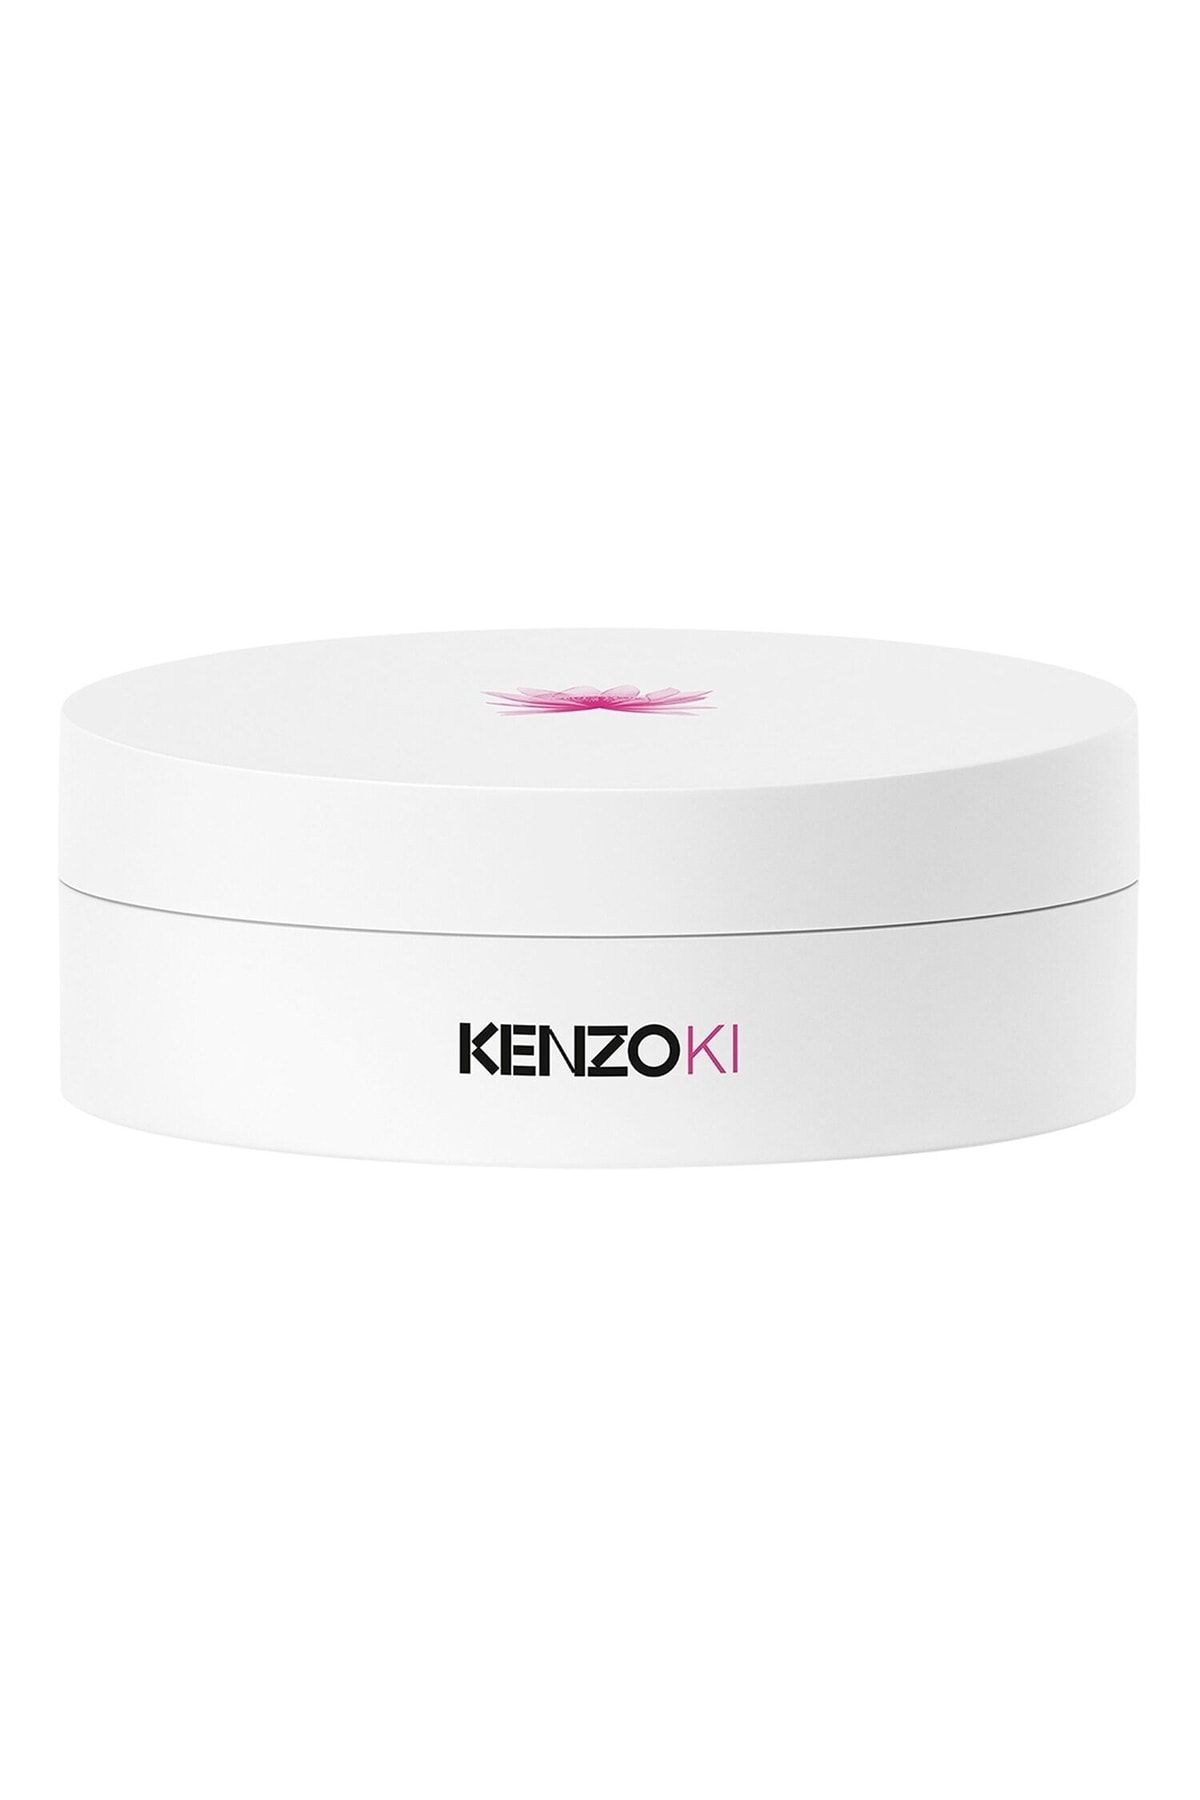 KENZOKI Youth Flow Intense Anti Ageing Skin Stimulant Night Repair Face Mask 75ml